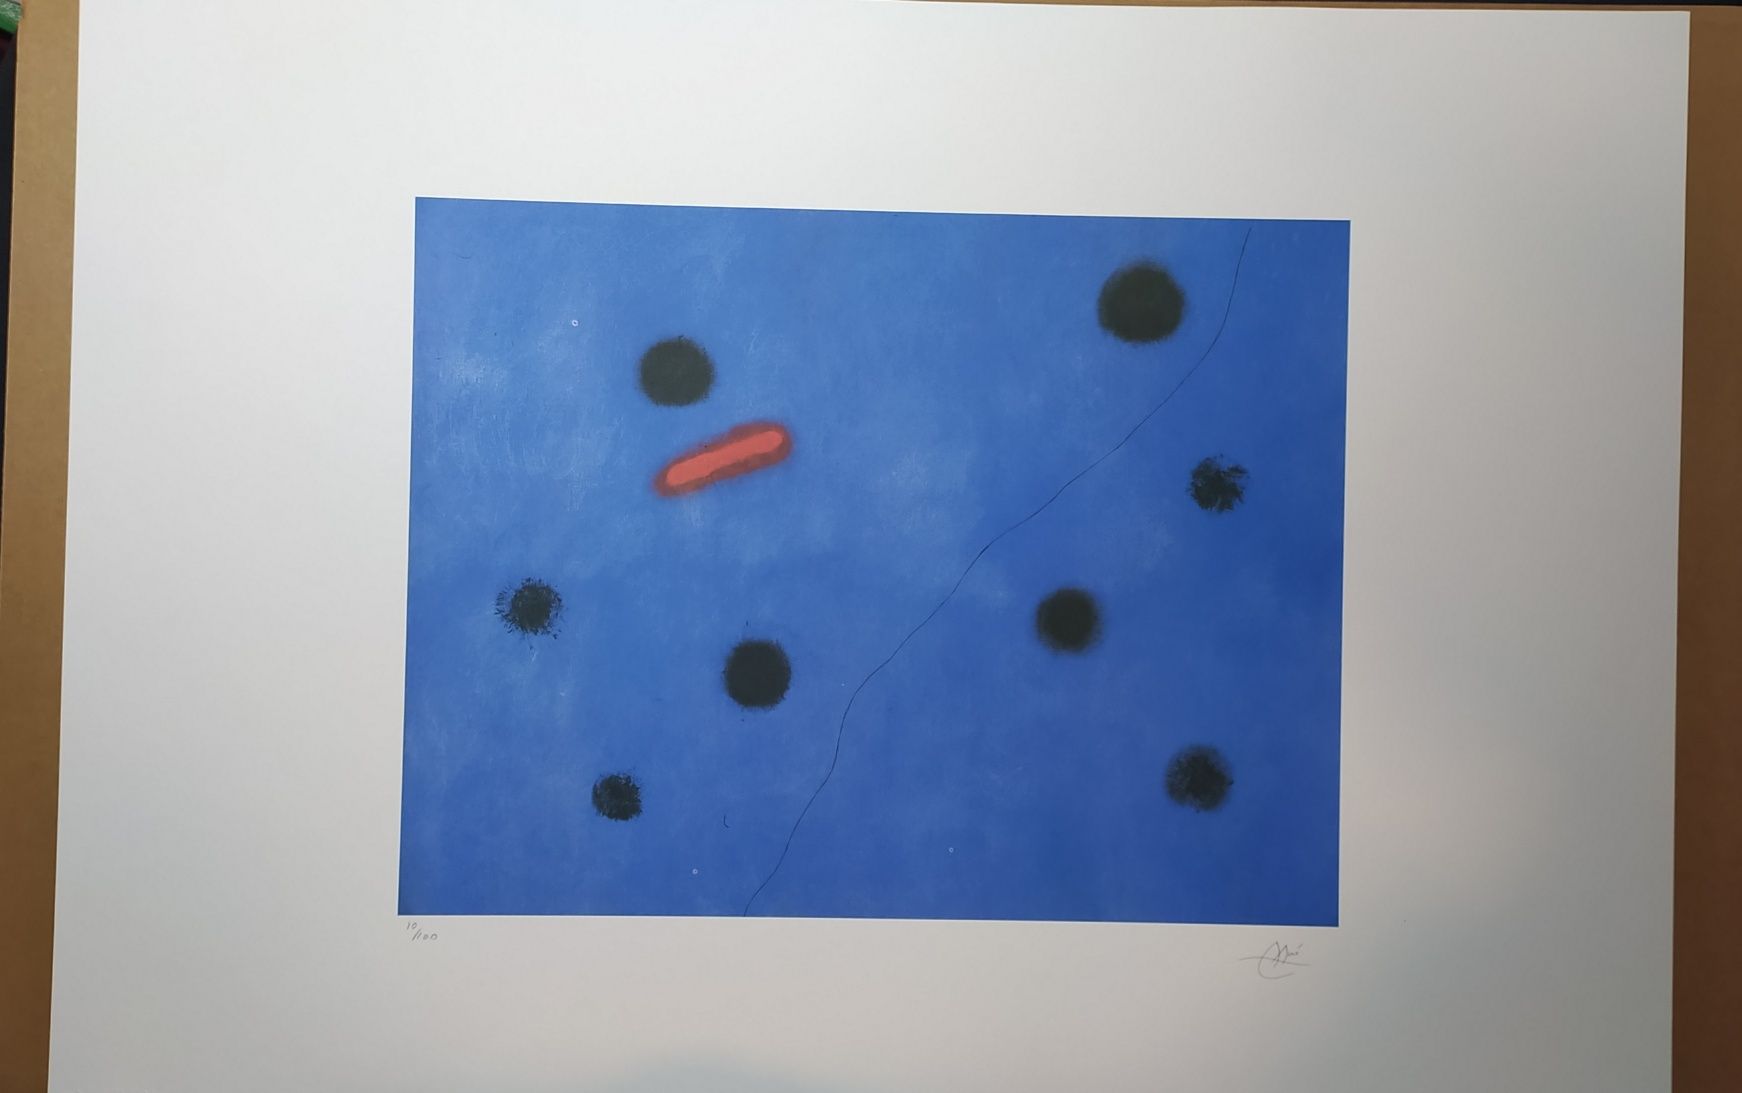 Litografia Joan Miró